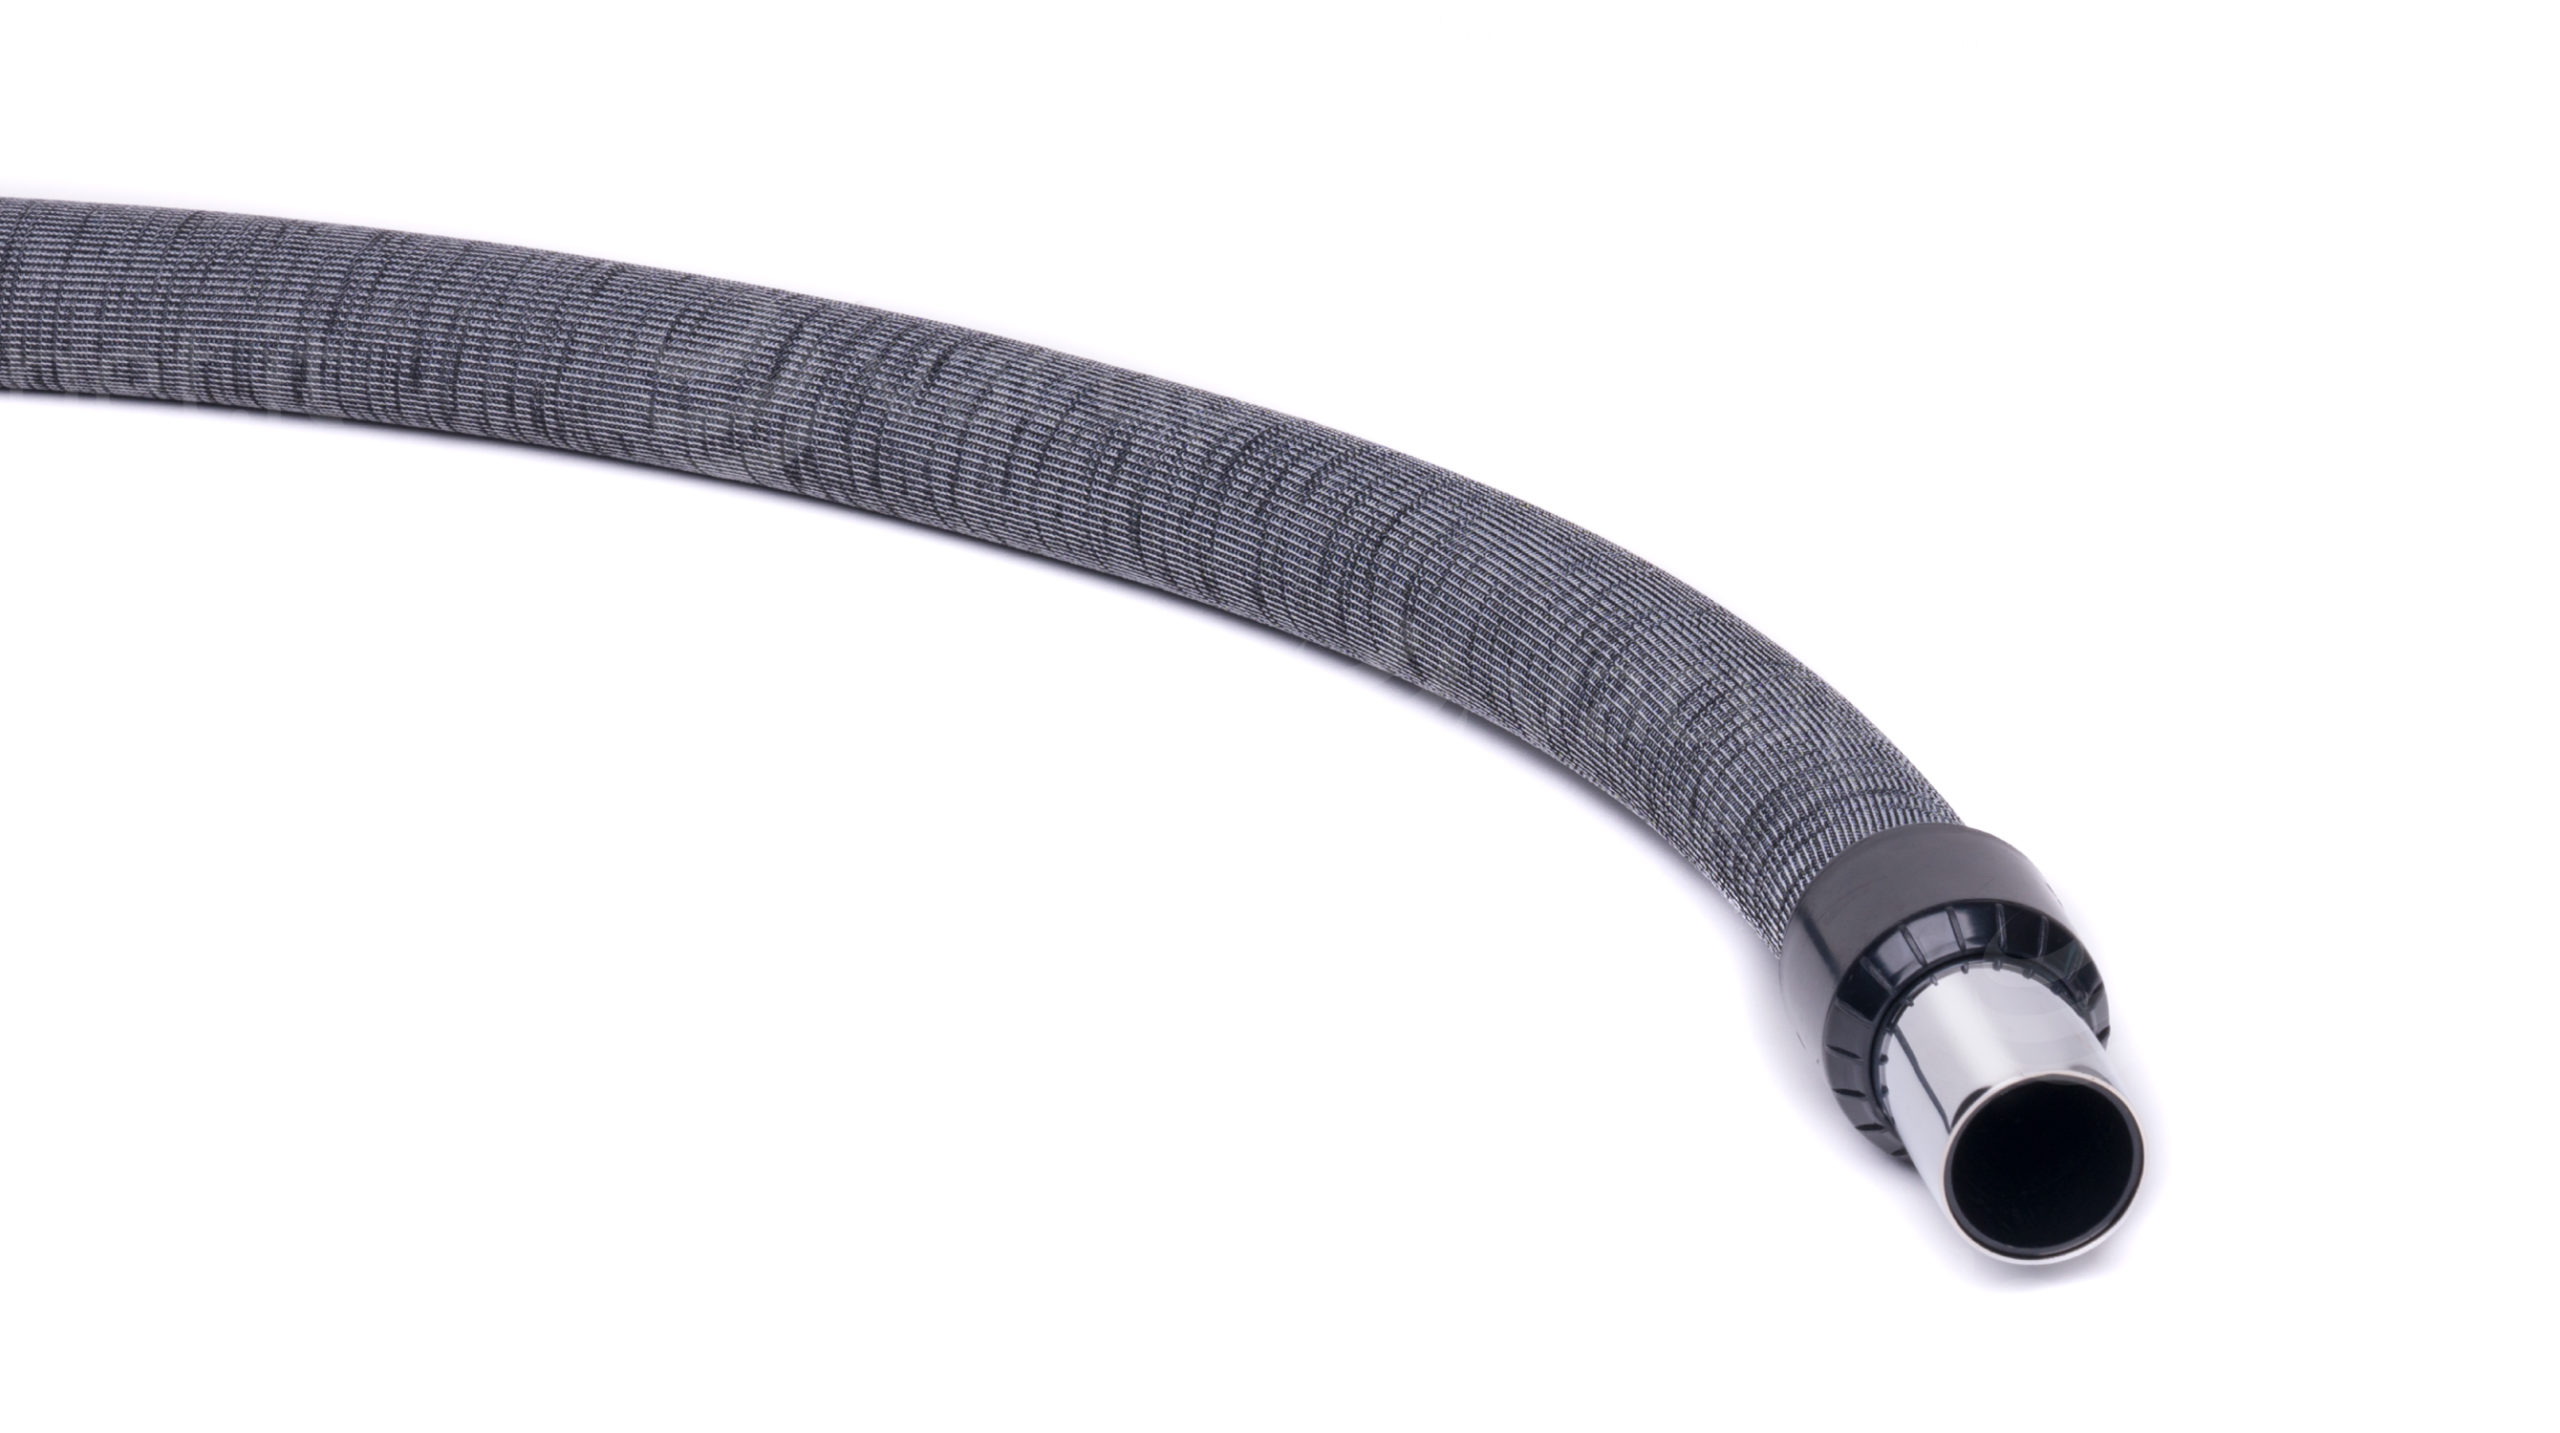 Dettaglio raccordo tubo-presa del tubo flessibile per aspirapolvere centralizzato con calza di rivestimento integrata